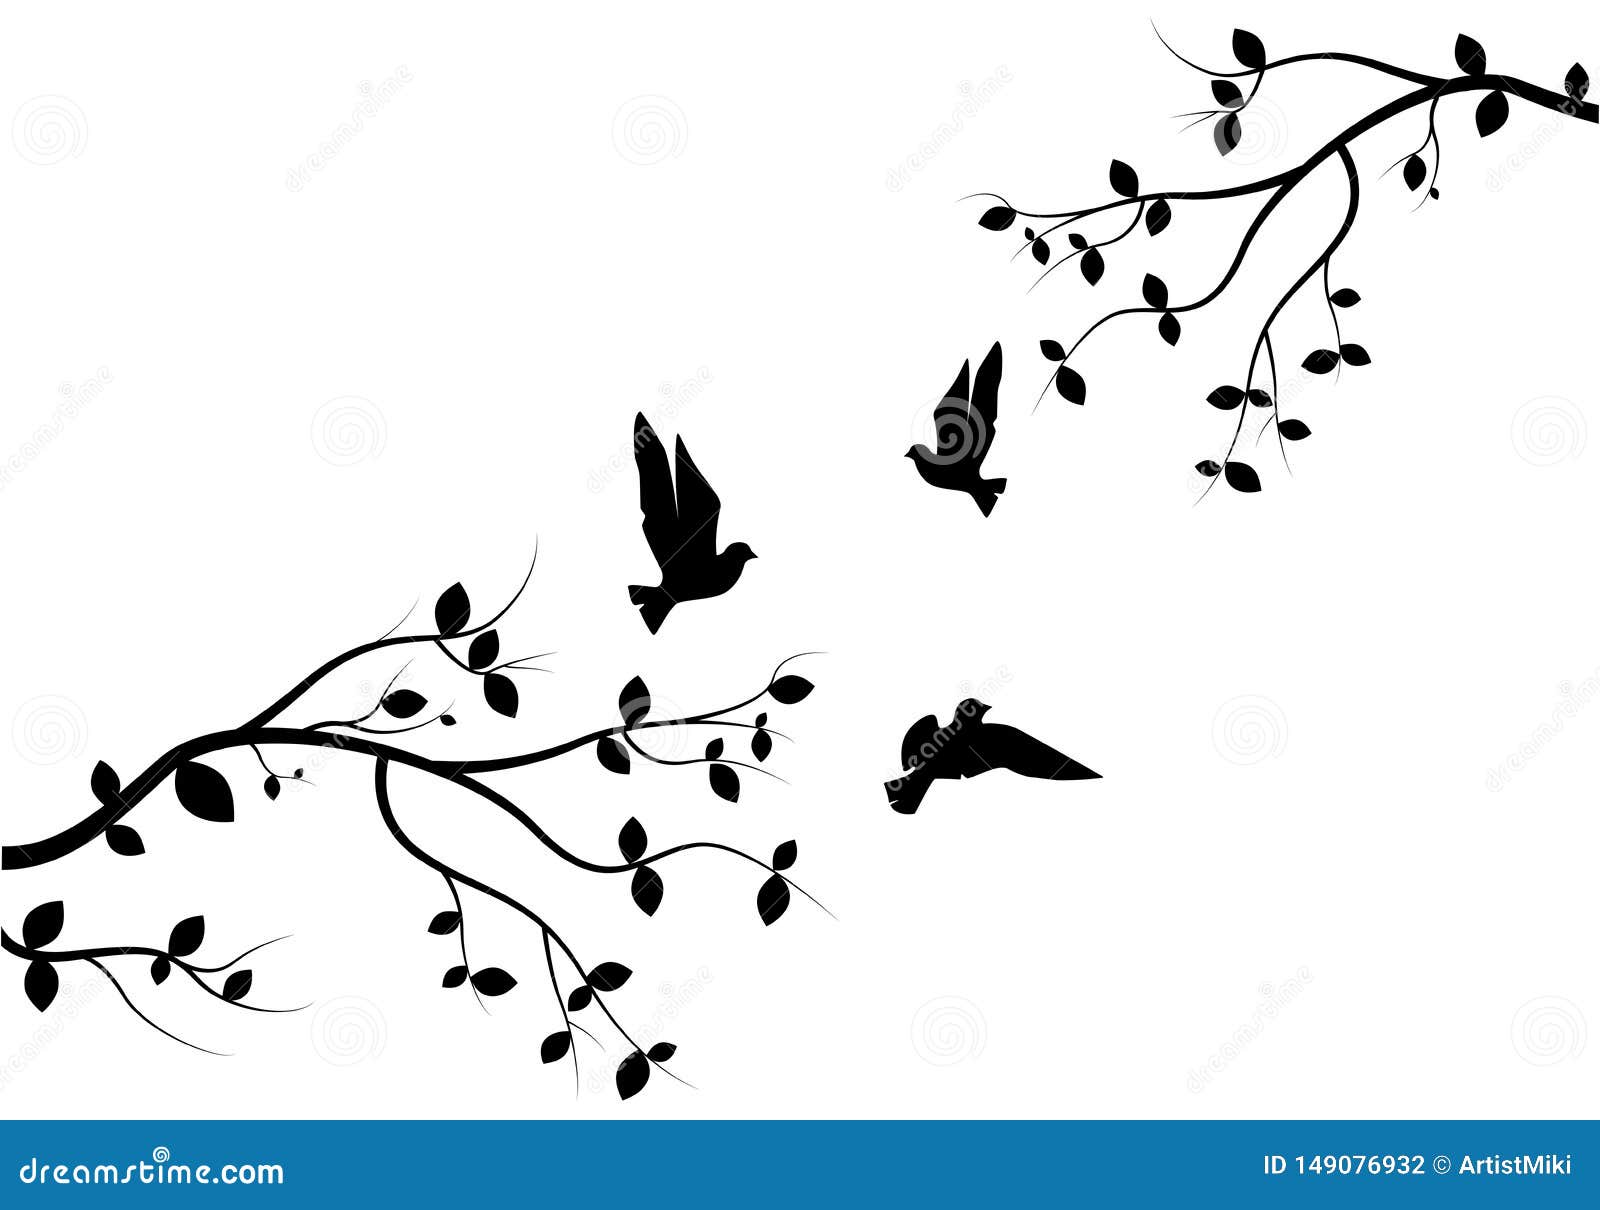 Los Pájaros De Vuelo En Vector La Rama, Etiquetas De La Pared, Pájaros En Diseño Del Se Juntan De Silueta De Los Pájaro del - Ilustración de silueta,